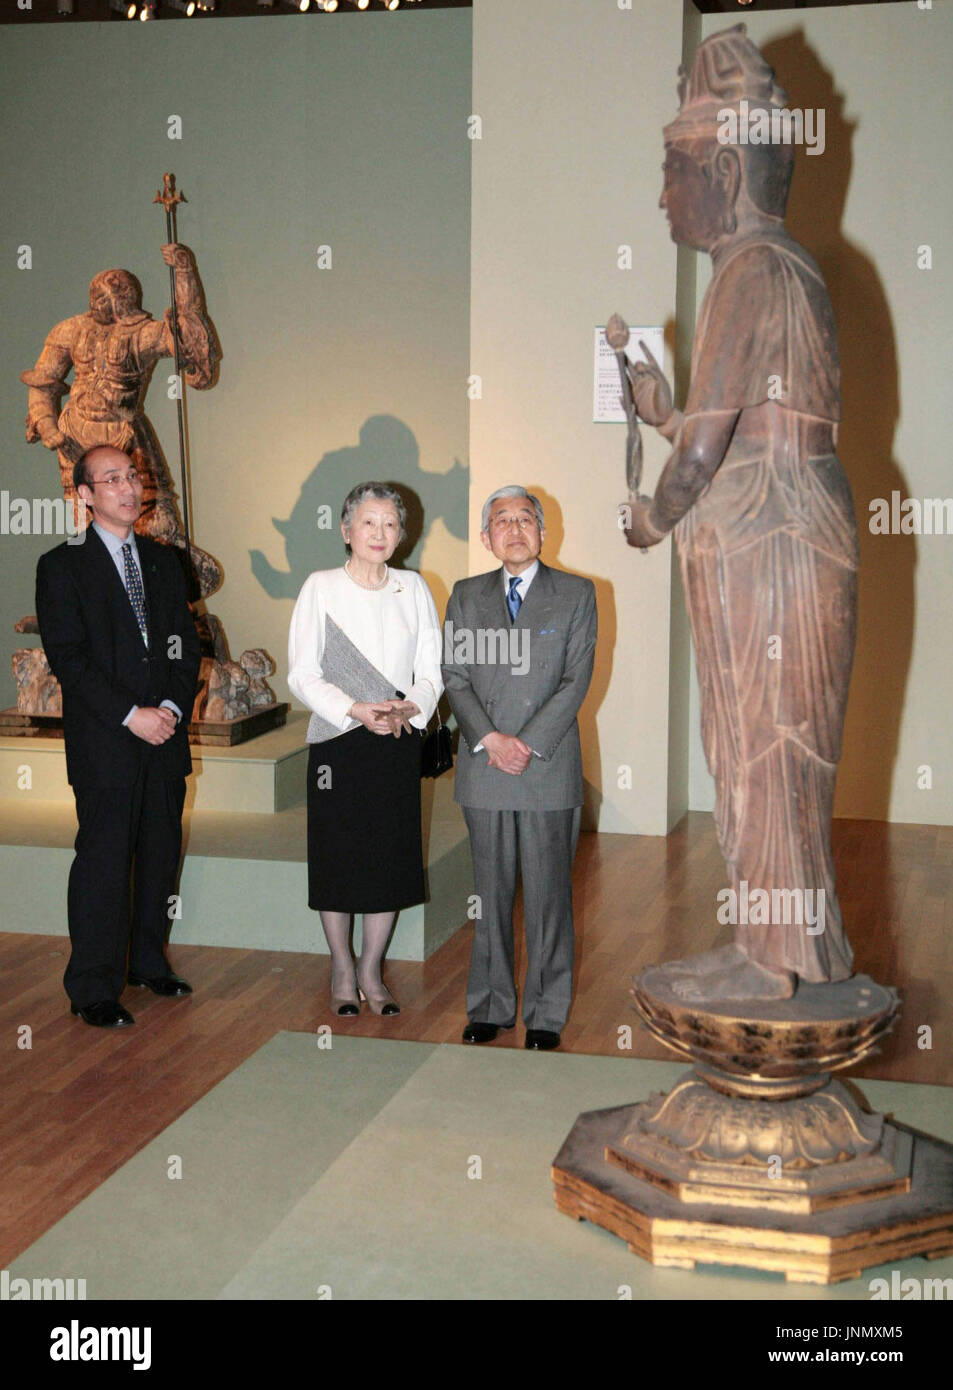 TOKYO, Japan - Emperor Akihito and Empress Michiko look at an Buddhist ...